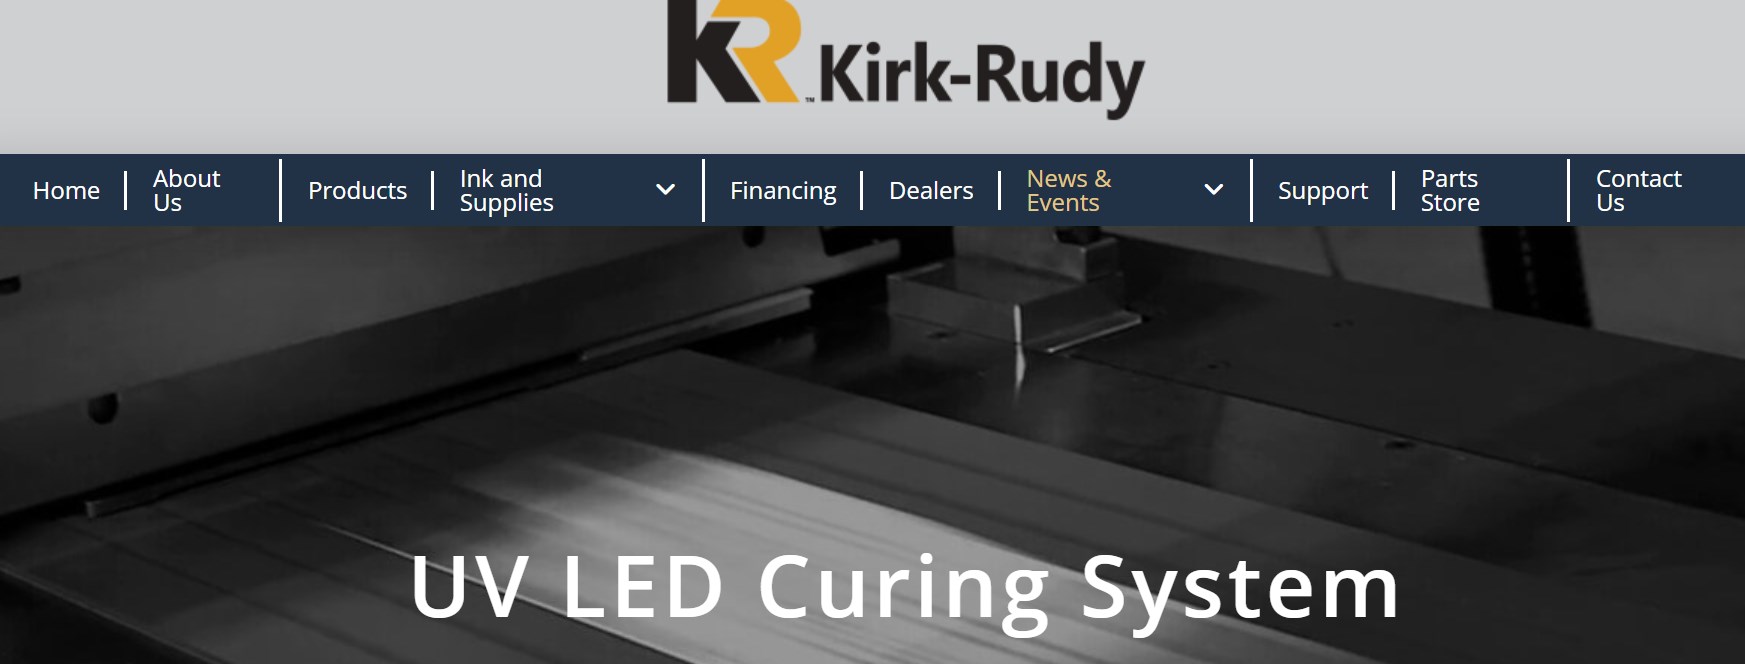 Krik-Rudy uv led curing system  manufacturer